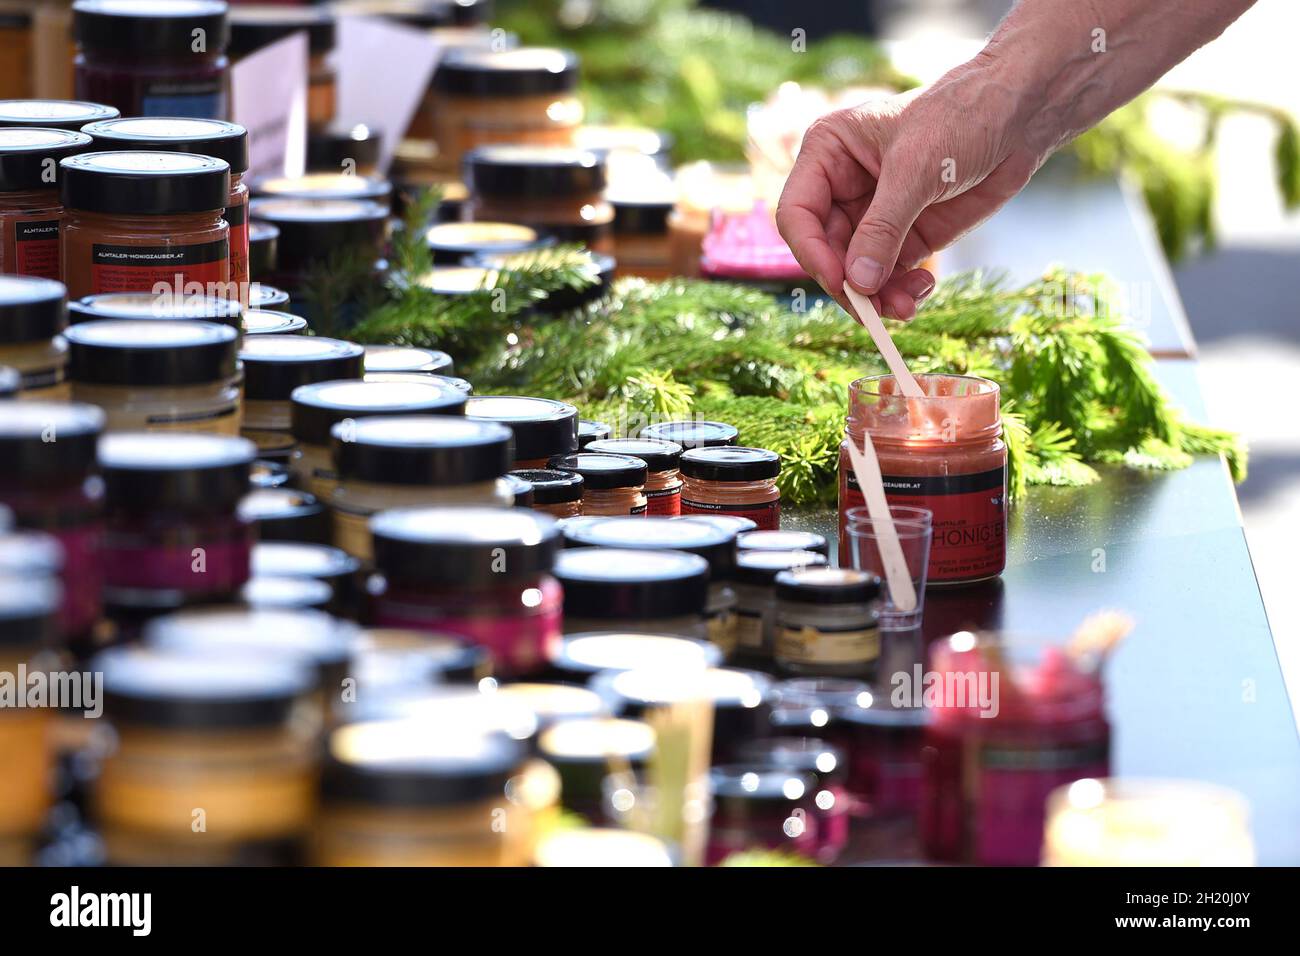 Viele Gläser mit verschiedenen Marmeladen und Brotaufstrichen - Lots of jars with different jams and spreads Stock Photo